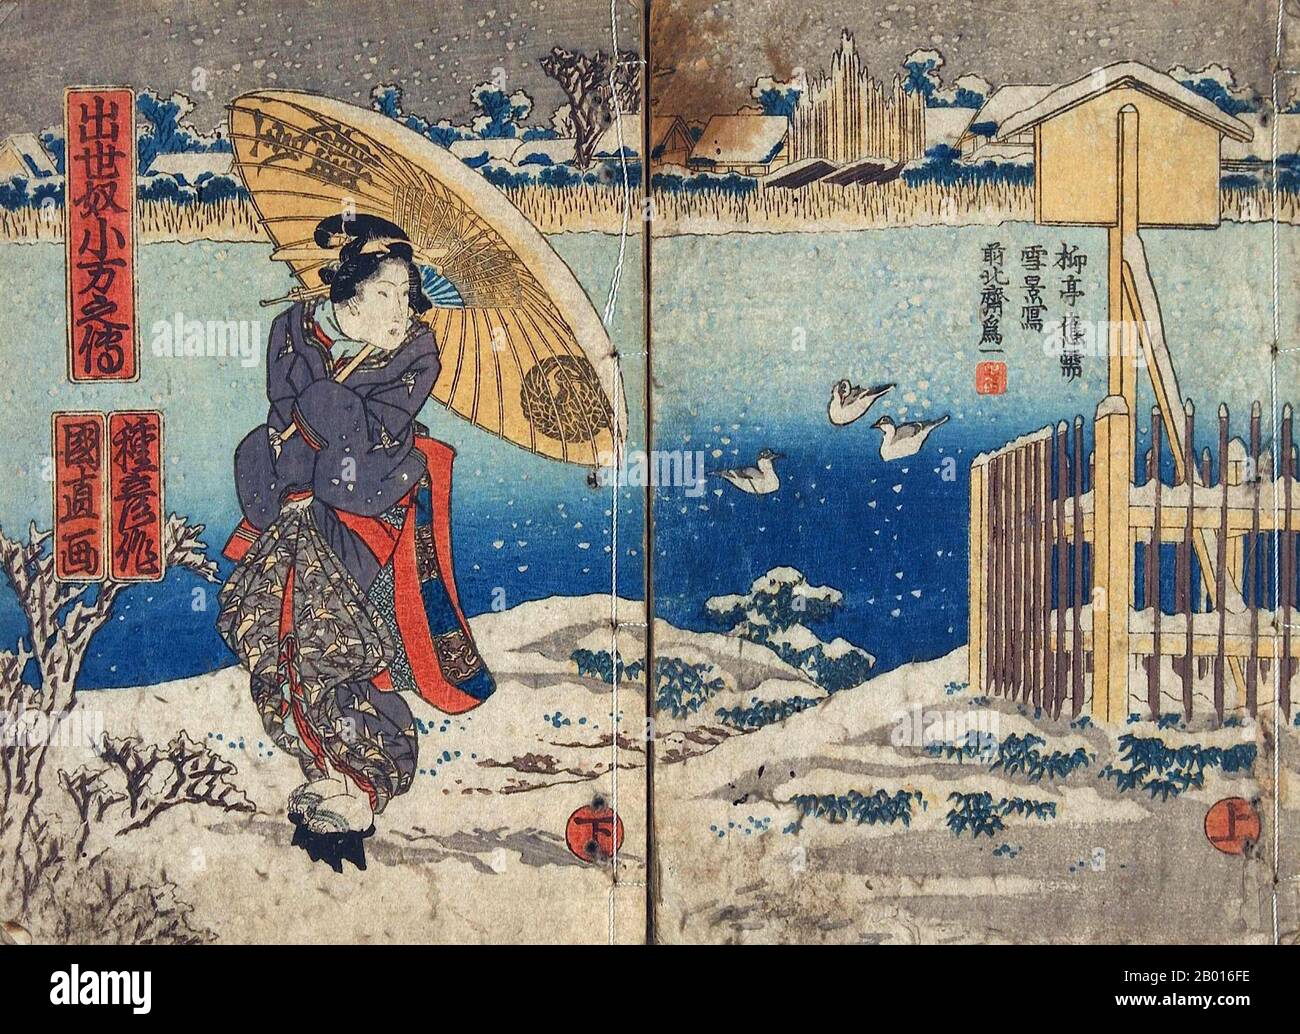 Japon: 'Lady and Duckpond in the Snow'.Impression de blocs de bois Ukiyo-e par Utagawa Tsuruya (fl. Fin du XIXe siècle), fin du XIXe siècle.L'école Utagawa était un groupe d'artistes japonais de l'imprimerie de blocs de bois, fondé par Toyoharu.Son élève, Toyokuni, a pris la relève après la mort de Toyoharu et a élevé le groupe pour devenir l'école d'impression en blocs de bois la plus célèbre et la plus puissante pour le reste du XIXe siècle.Hiroshige, Kunisada, Kuniyoshi et Yoshitoshi étaient des étudiants Utagawa.L'école est devenue si réussie et bien connue qu'aujourd'hui plus de la moitié de tous les tirages ukiyo-e survivants en sont issus. Banque D'Images